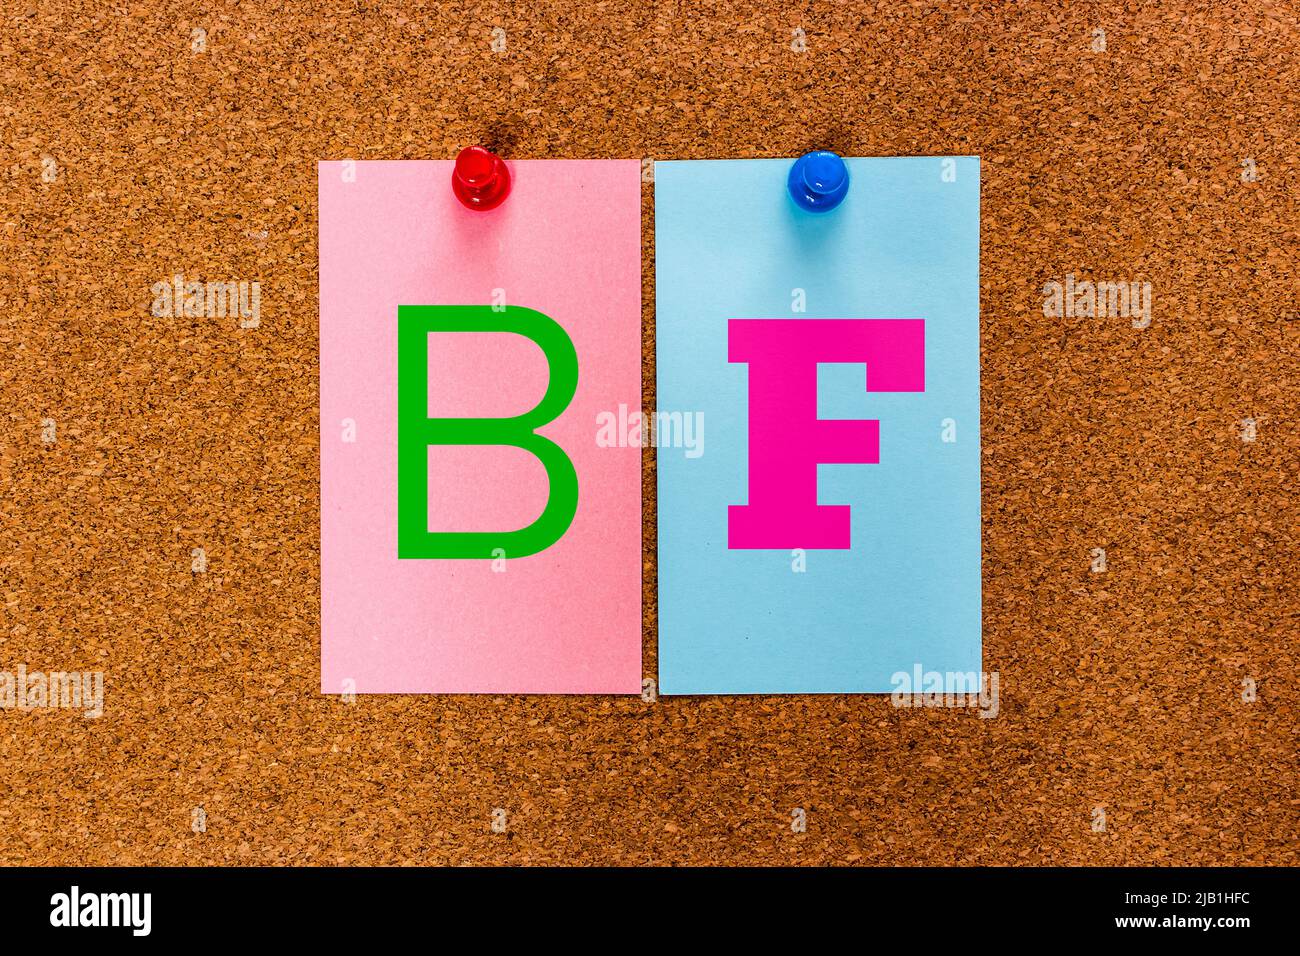 Mot-clé conceptuel de 2 lettres BF (Boy Friend, Boyfriend) sur les autocollants fixés à un panneau en liège. Concept d'amour, d'affaire et de relation entre les personnes Banque D'Images